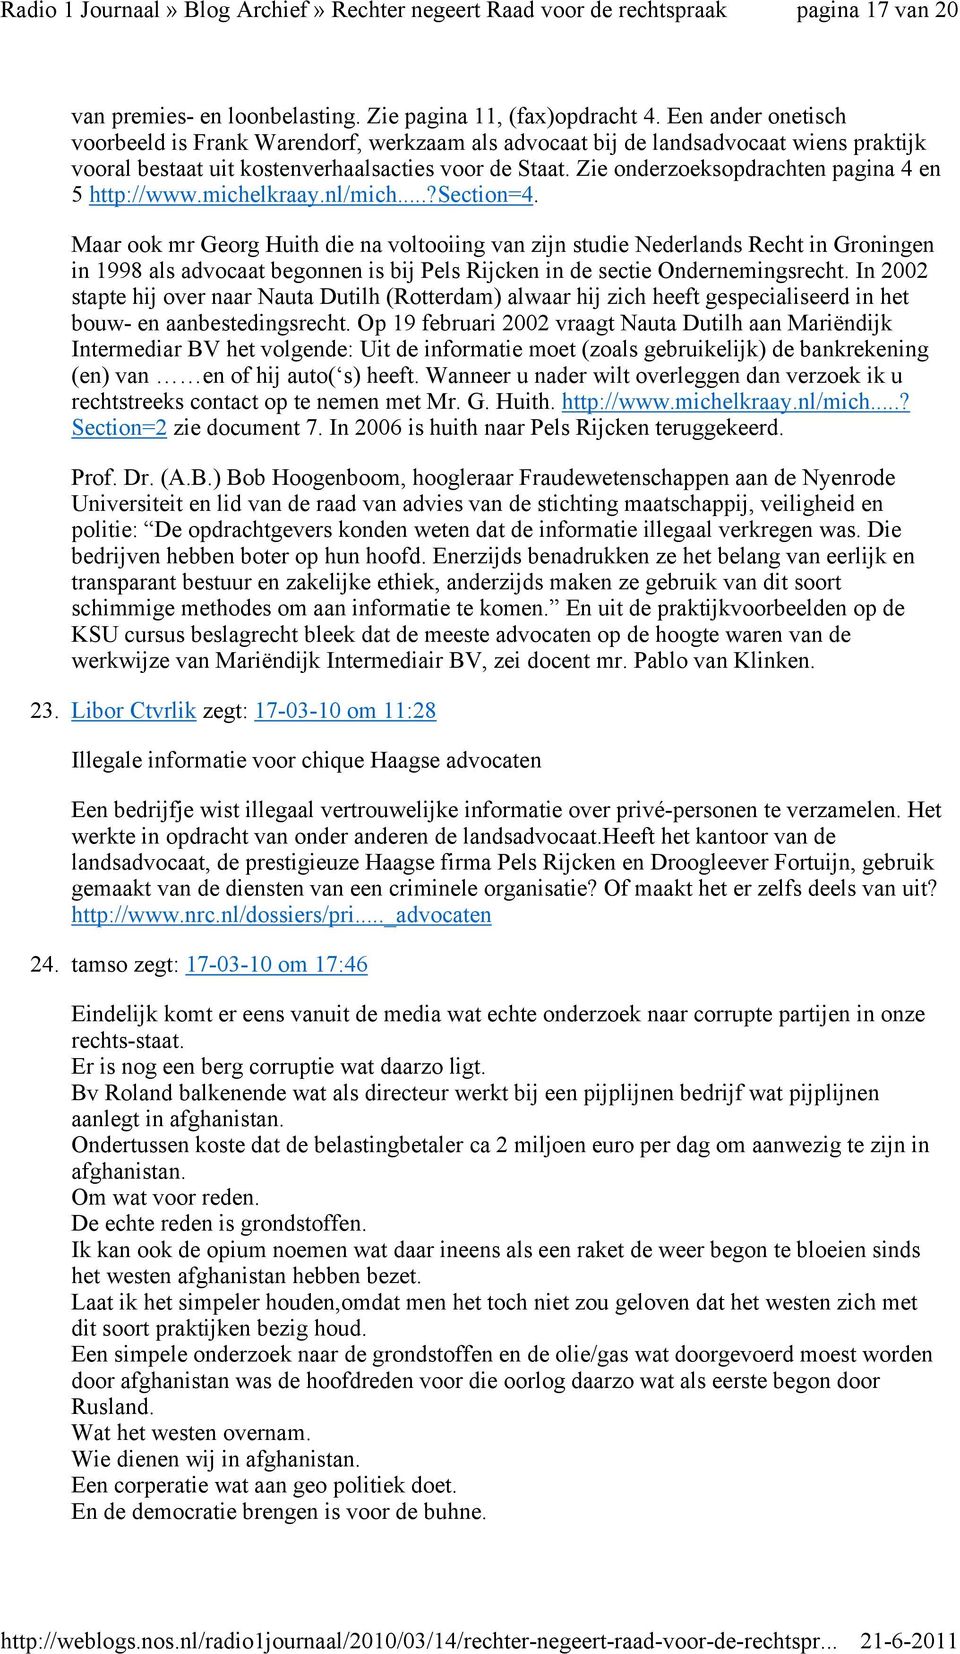 Zie onderzoeksopdrachten pagina 4 en 5 http://www.michelkraay.nl/mich...?section=4.